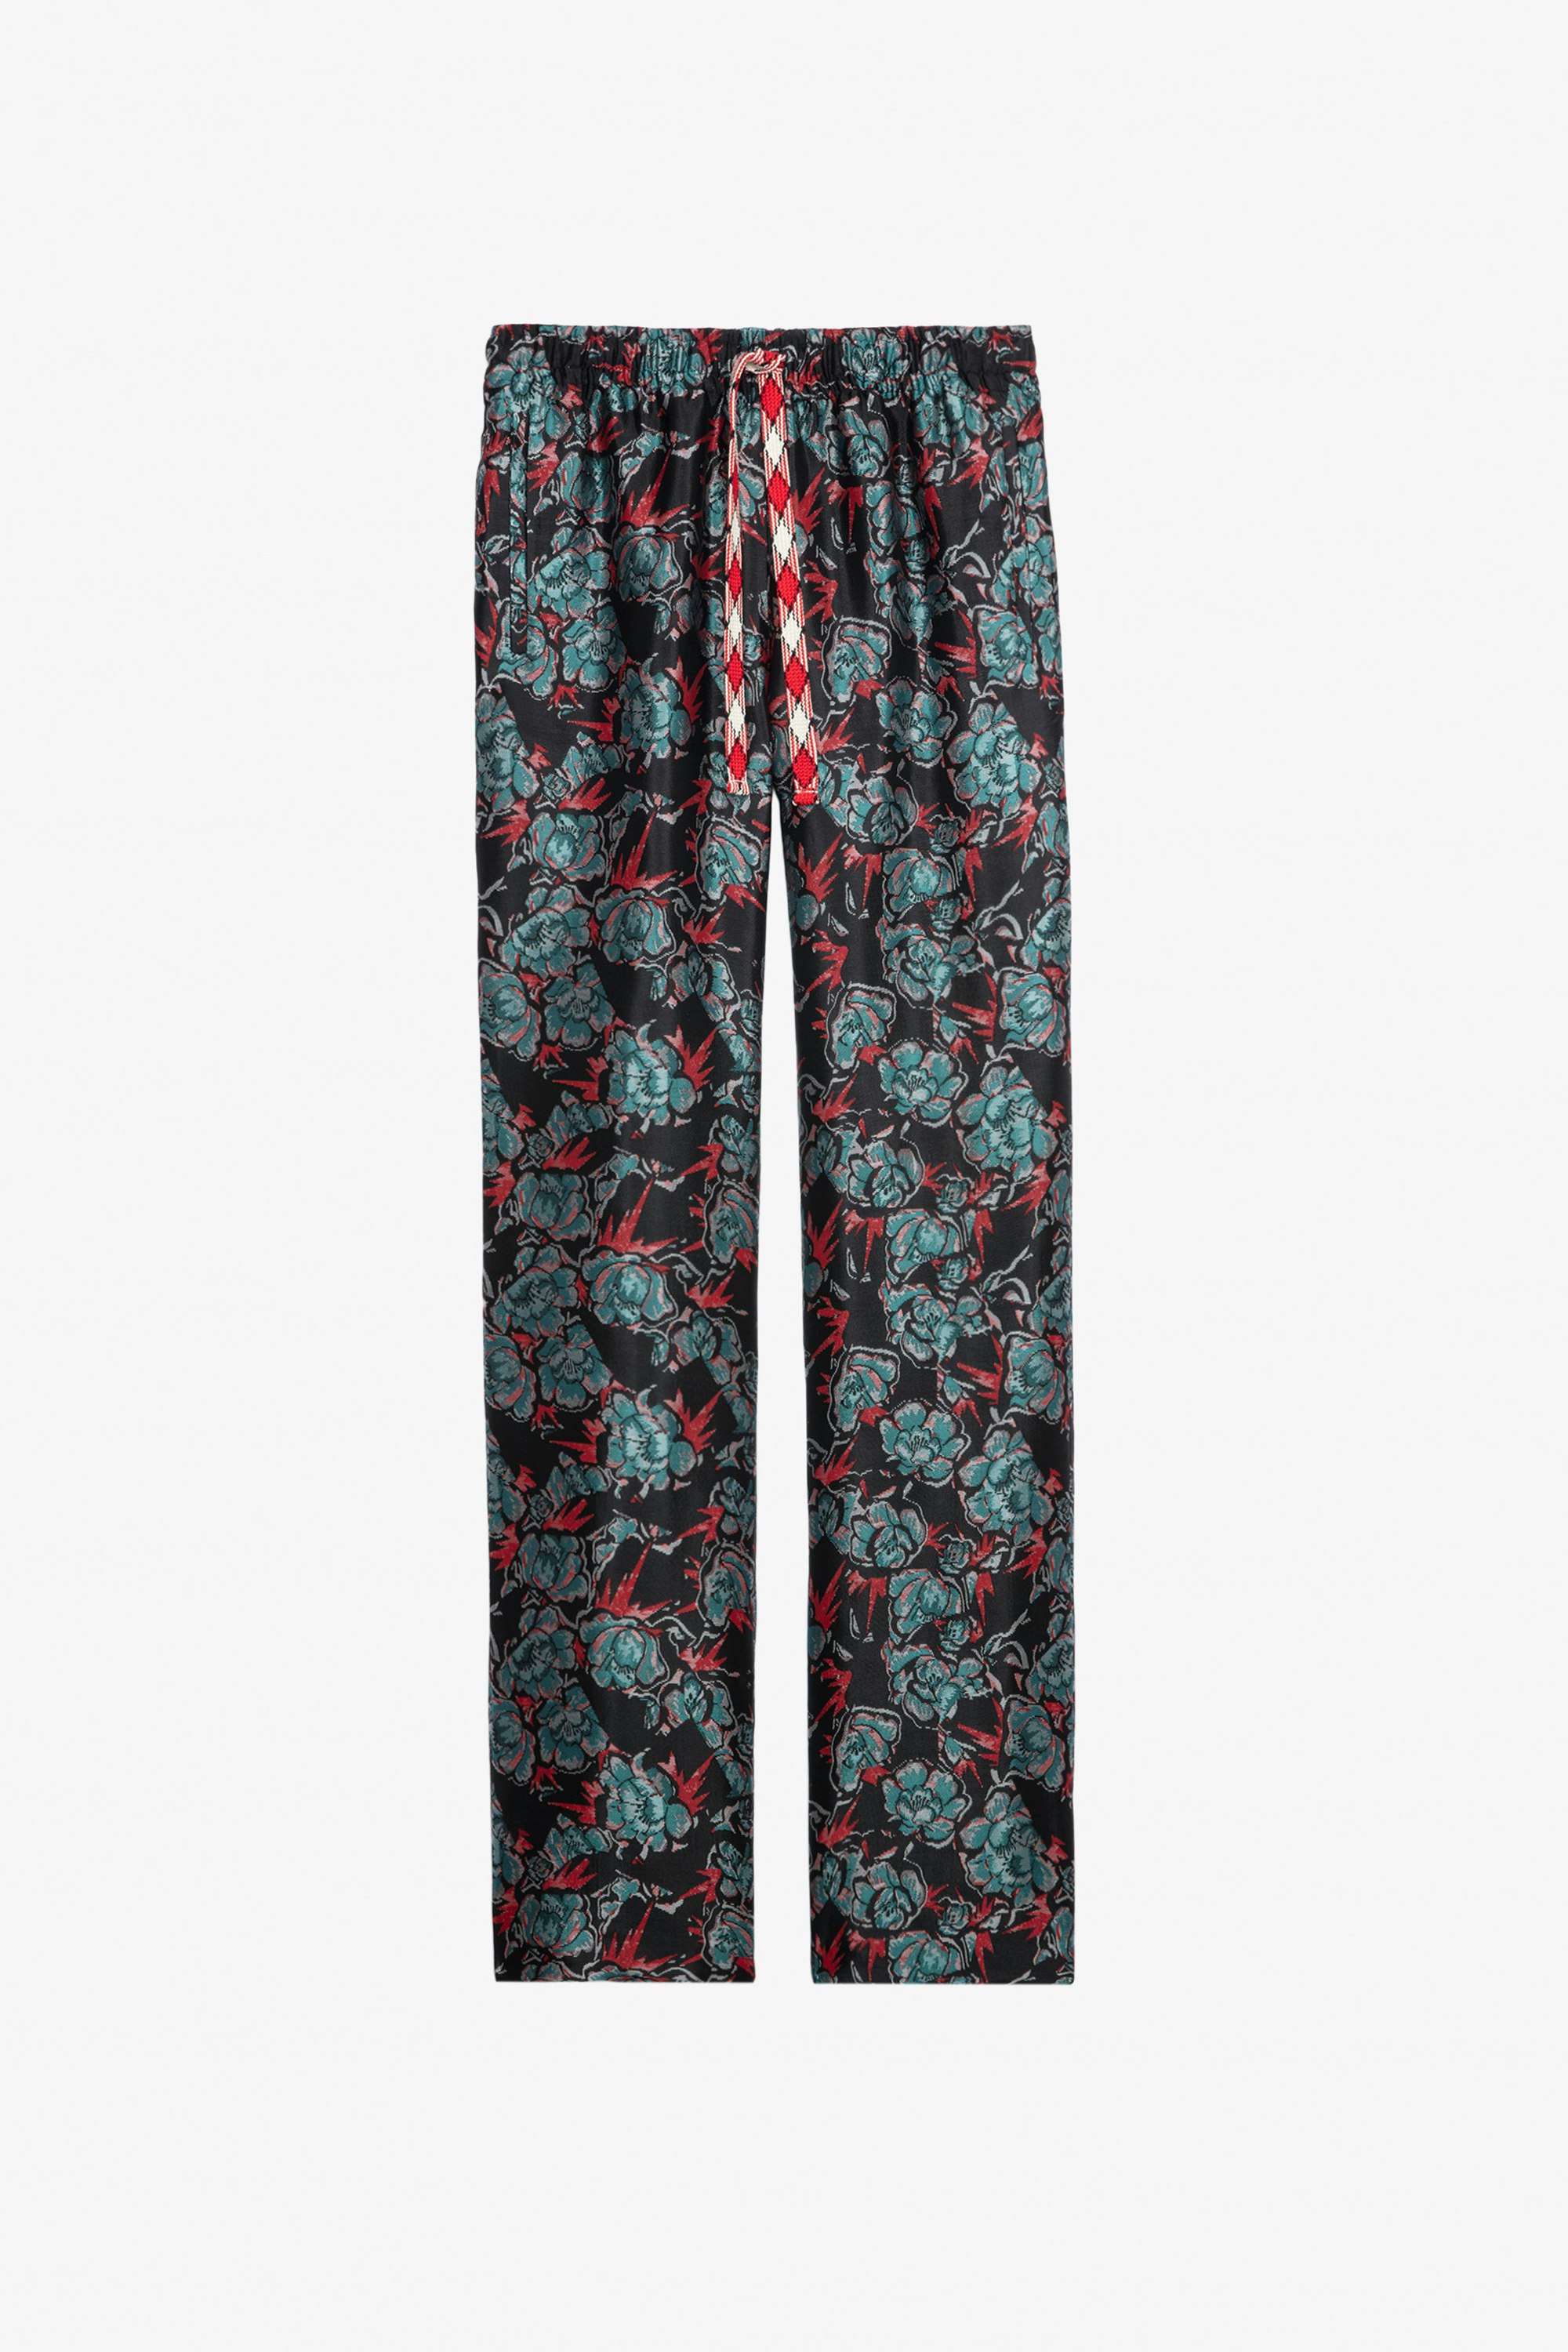 Pantalón Pomy Thunder Jacquard - Pantalón negro de jacquard floral con cordón estampado para mujer.